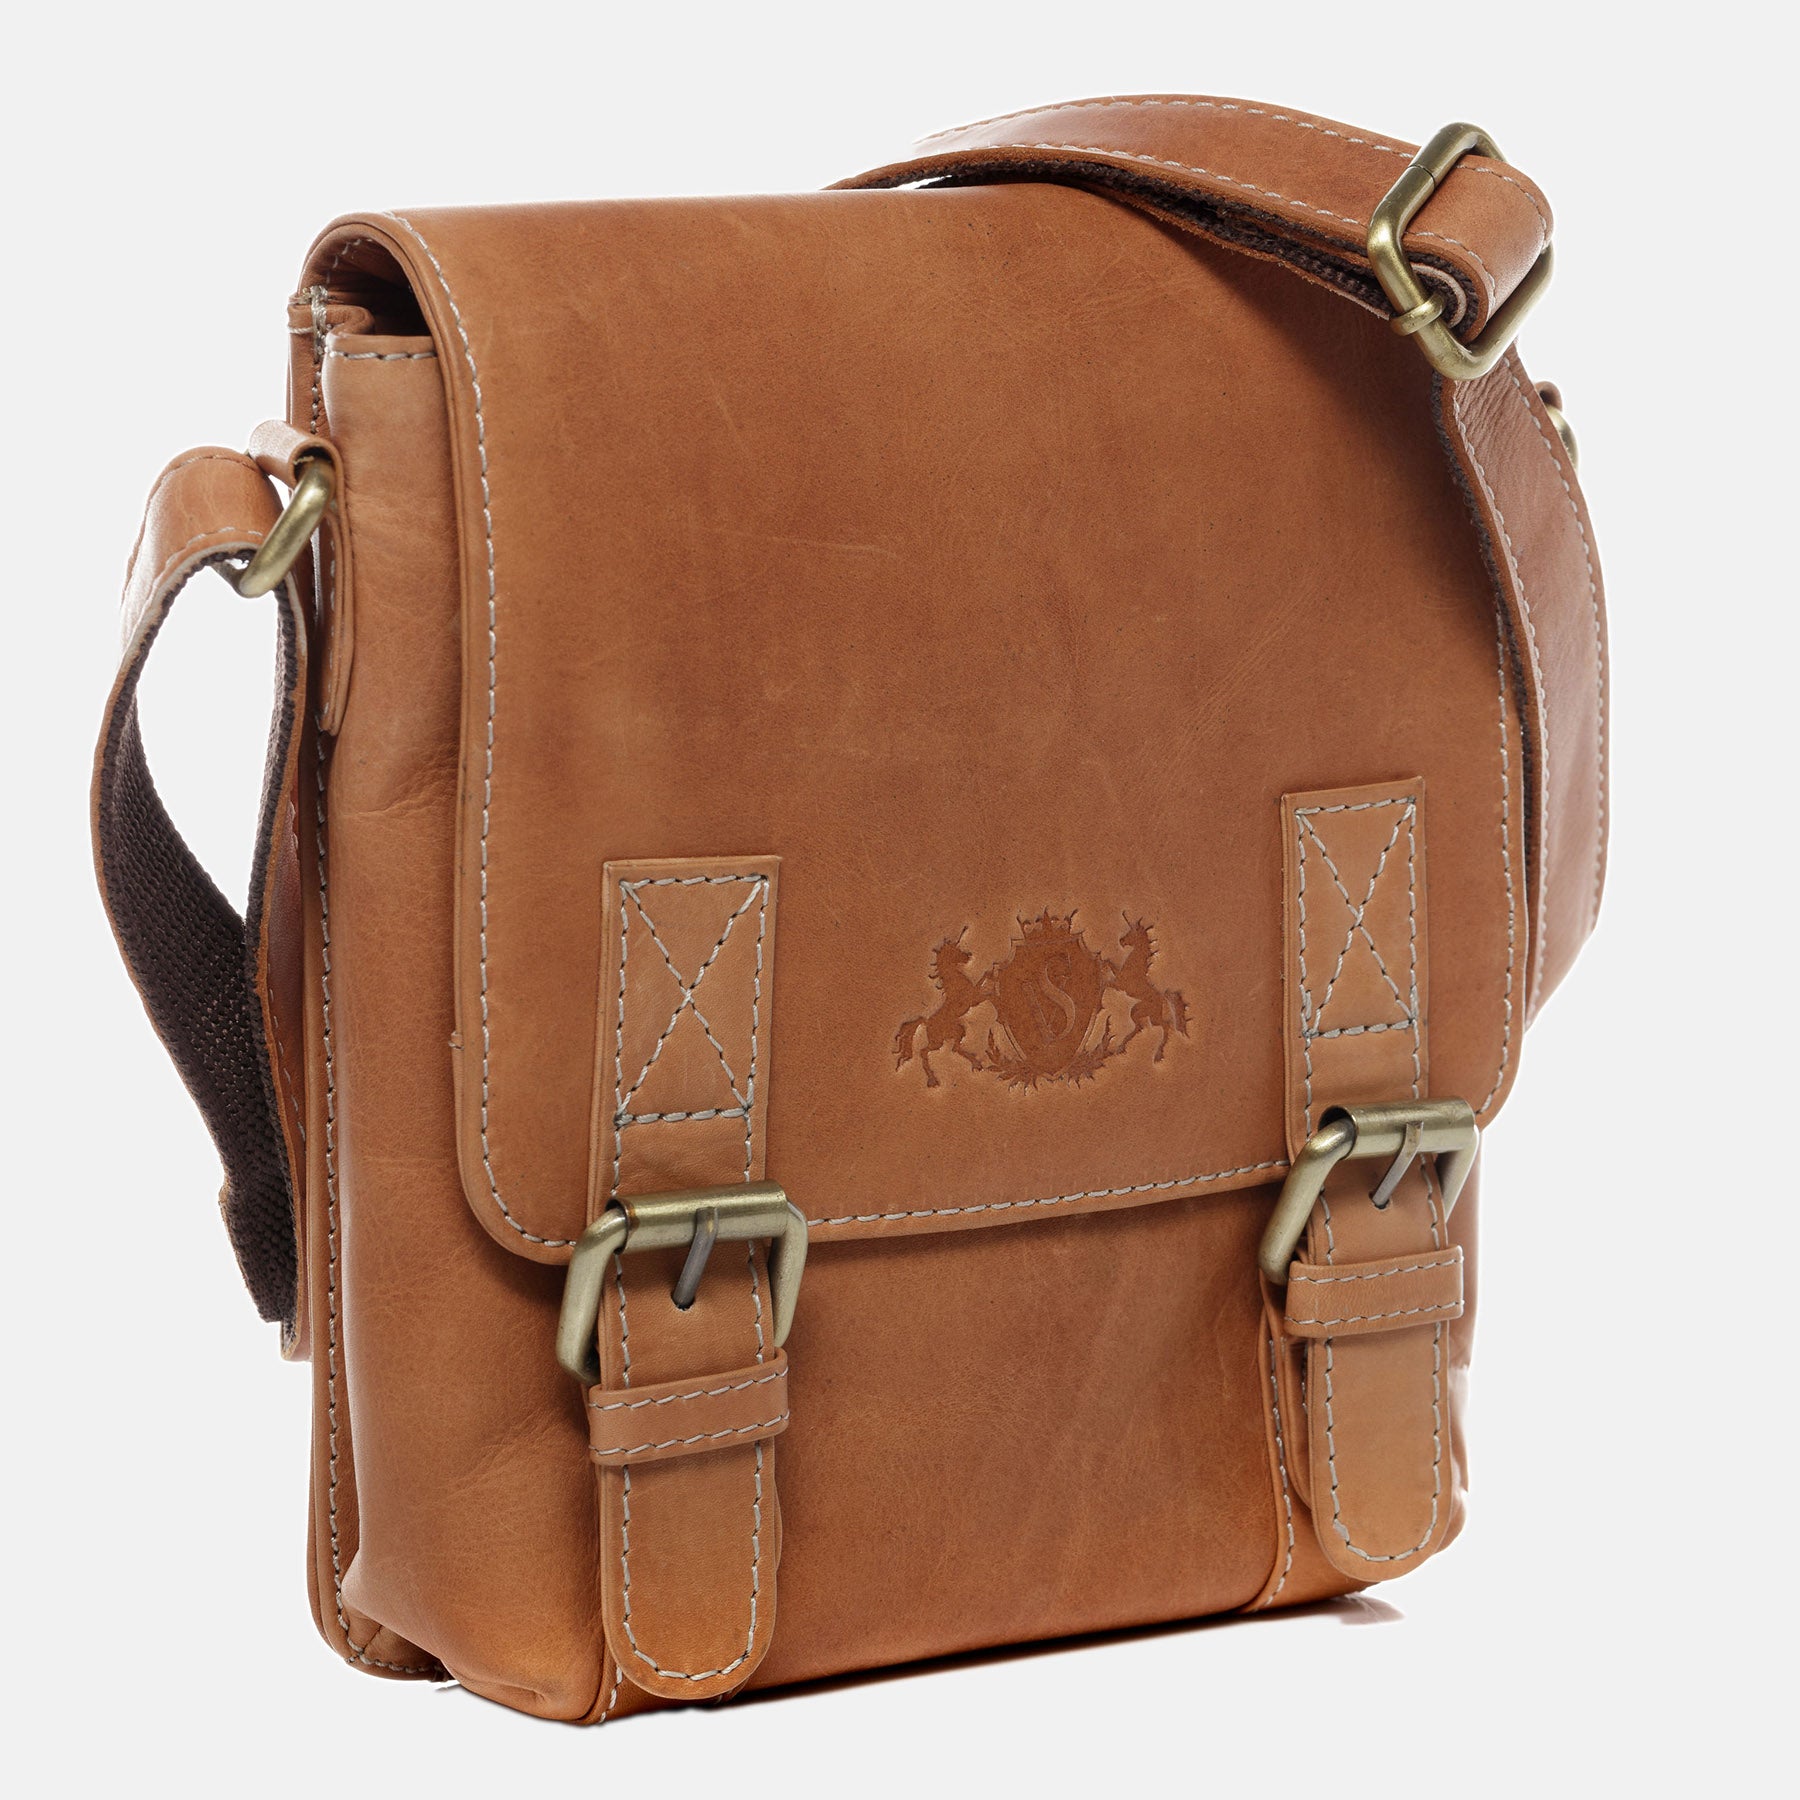 Shoulder bag KERBY natural leather brown